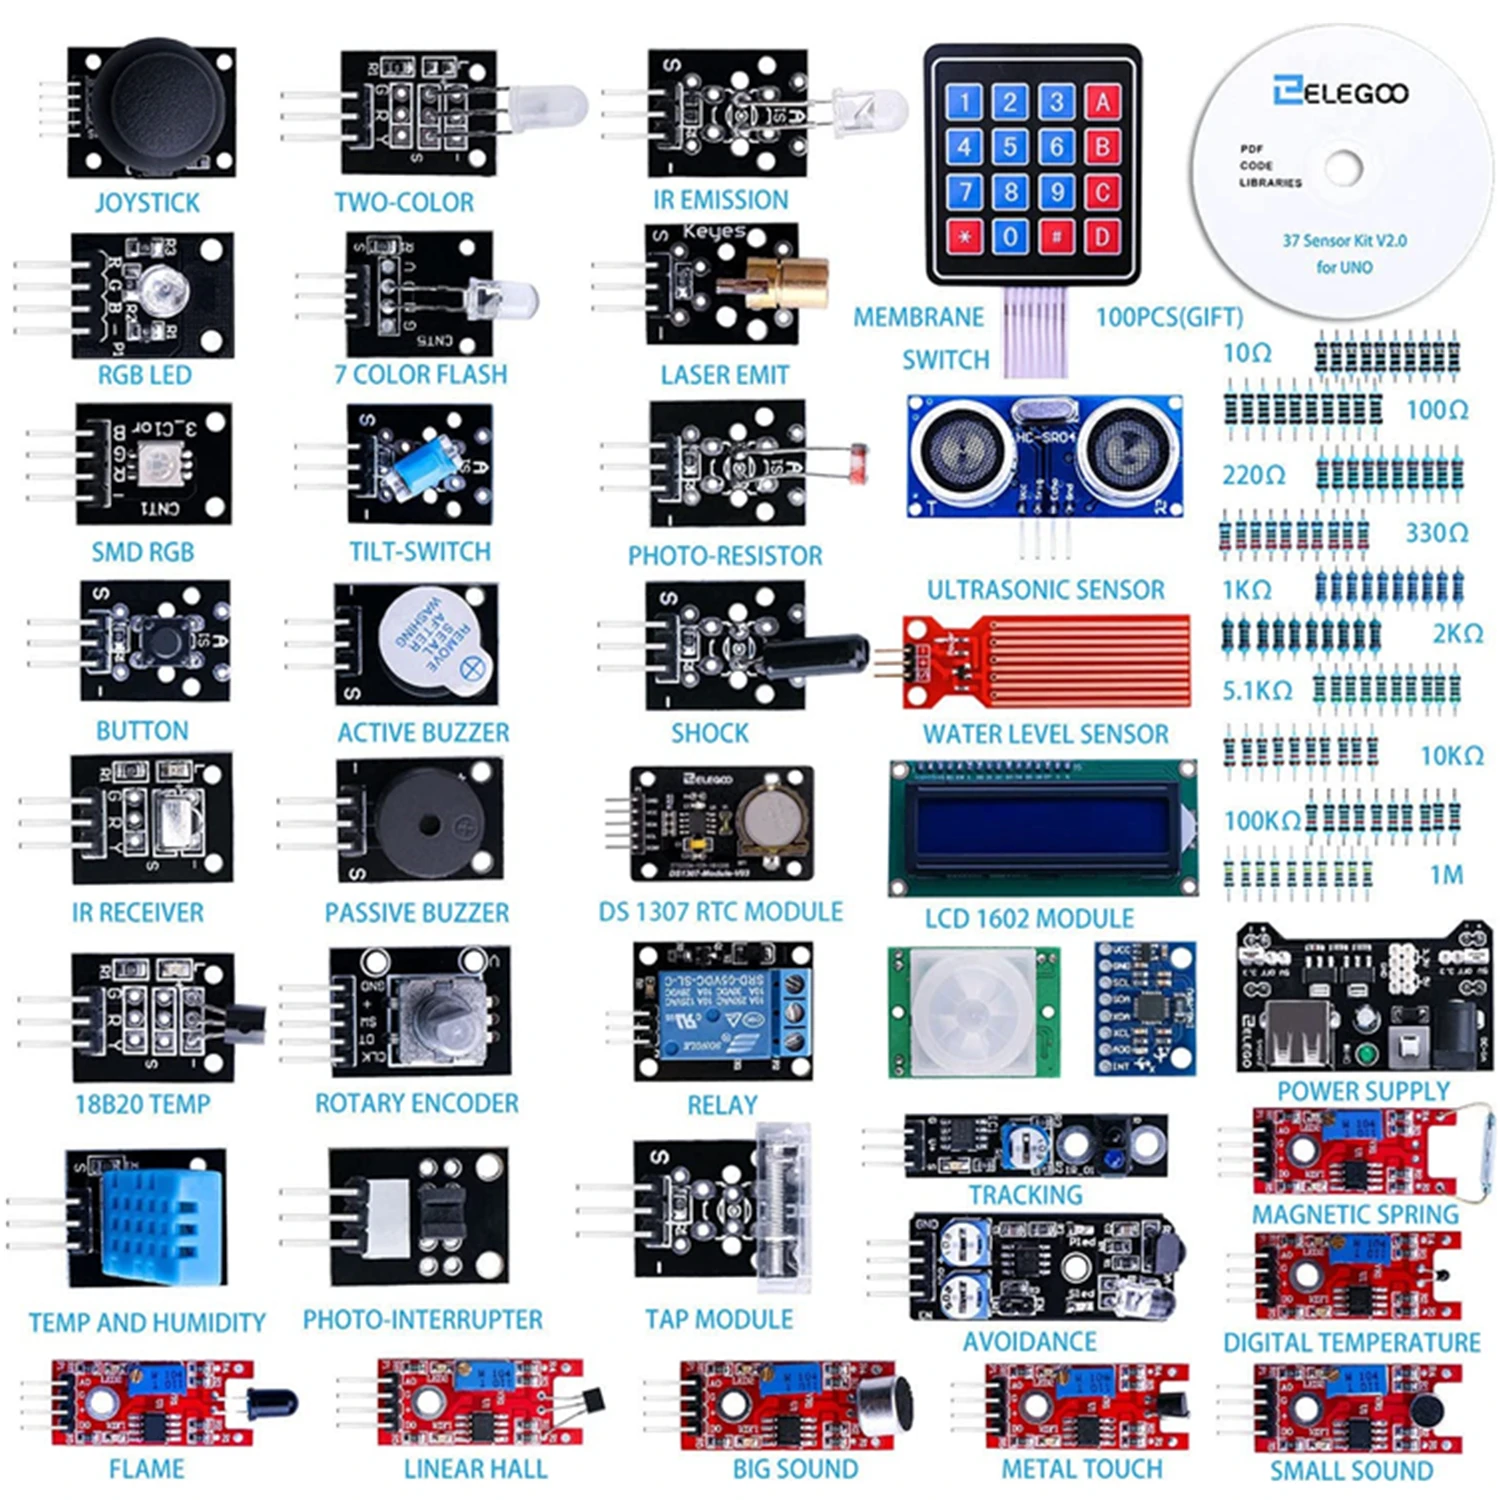 

Набор улучшенных модулей датчиков ELEGOO 37 в 1, с учебным пособием, совместим с Arduino IDE UNO R3 MEGA Nano, набор для сборки электроники «сделай сам»